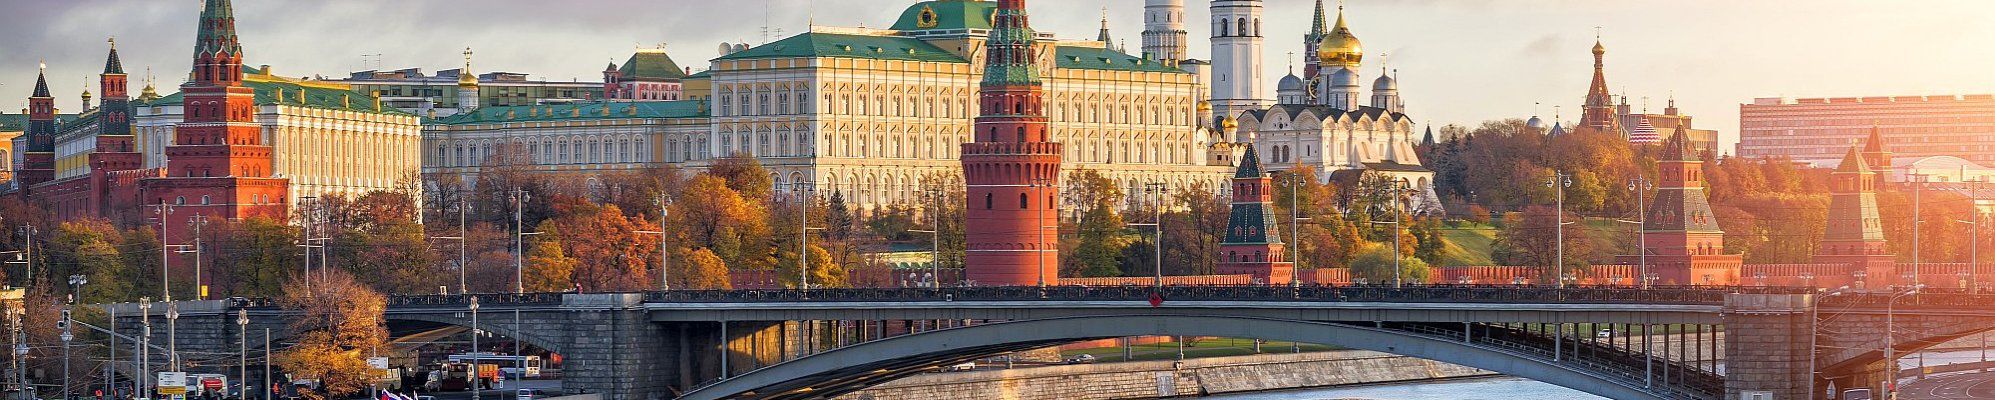 Moskau - Kreml © yulenochekk - stock.adobe.com